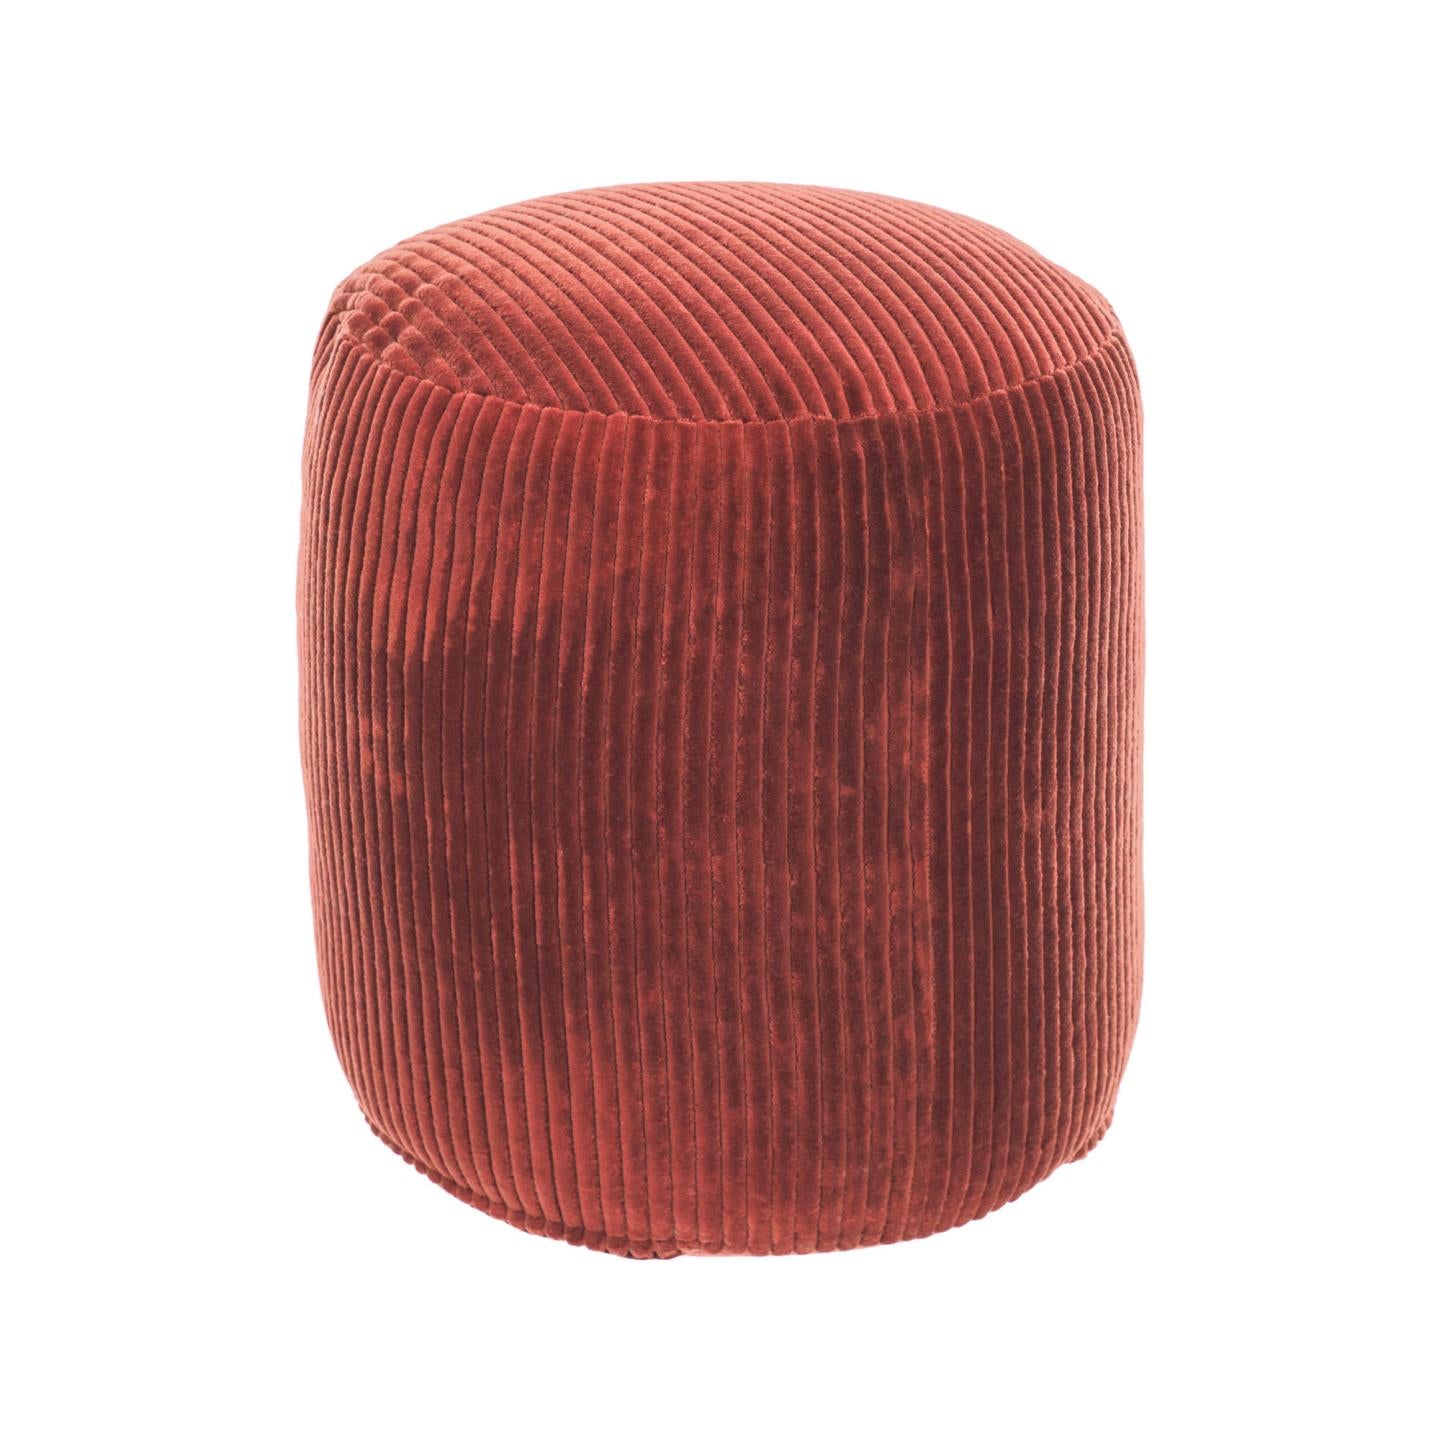 Cadenet round pouffe in wide seam terracotta corduroy, Ø 40 cm